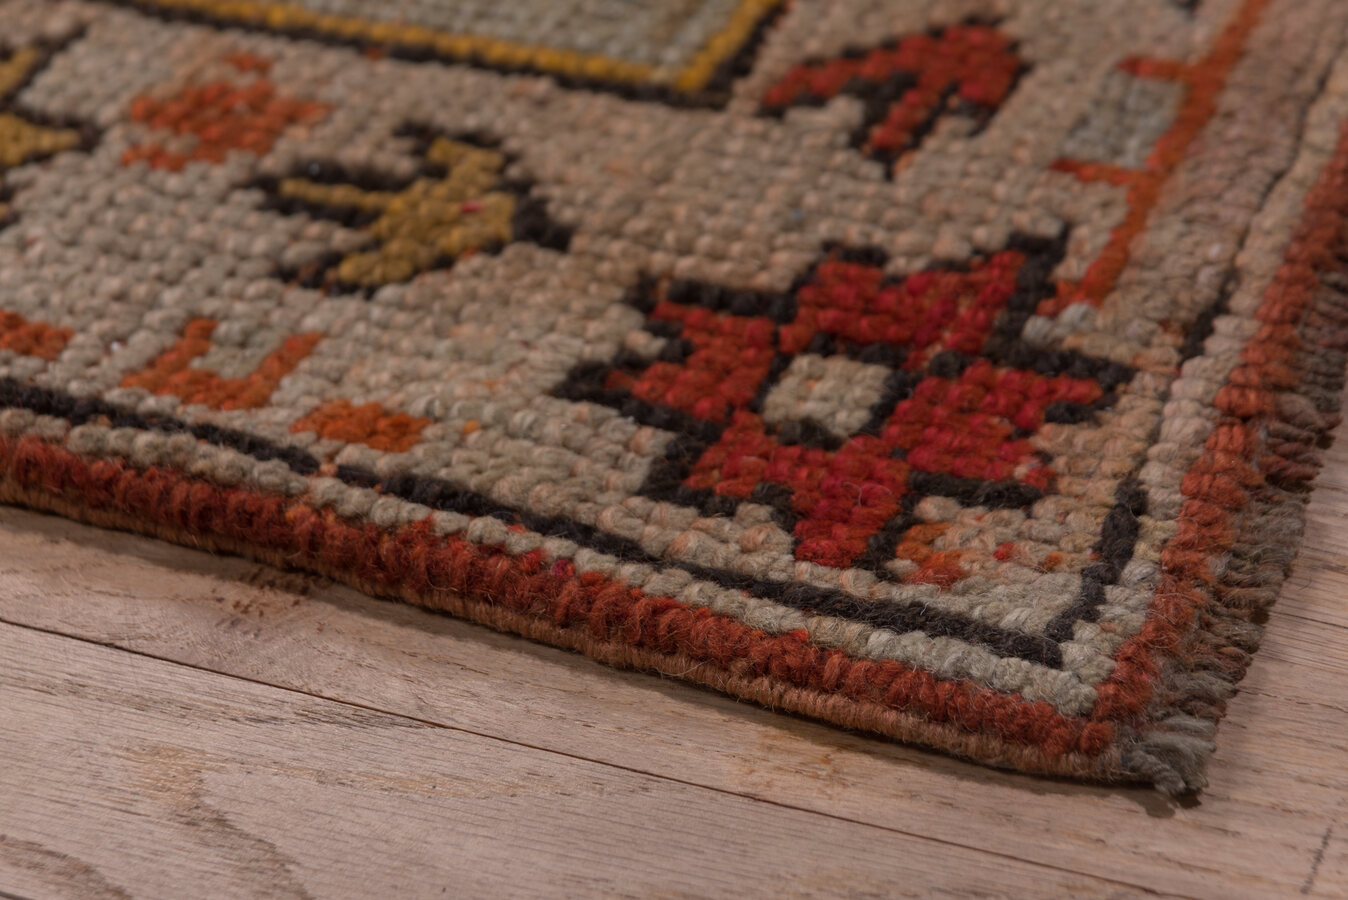 Antique oushak Carpet - # 57330